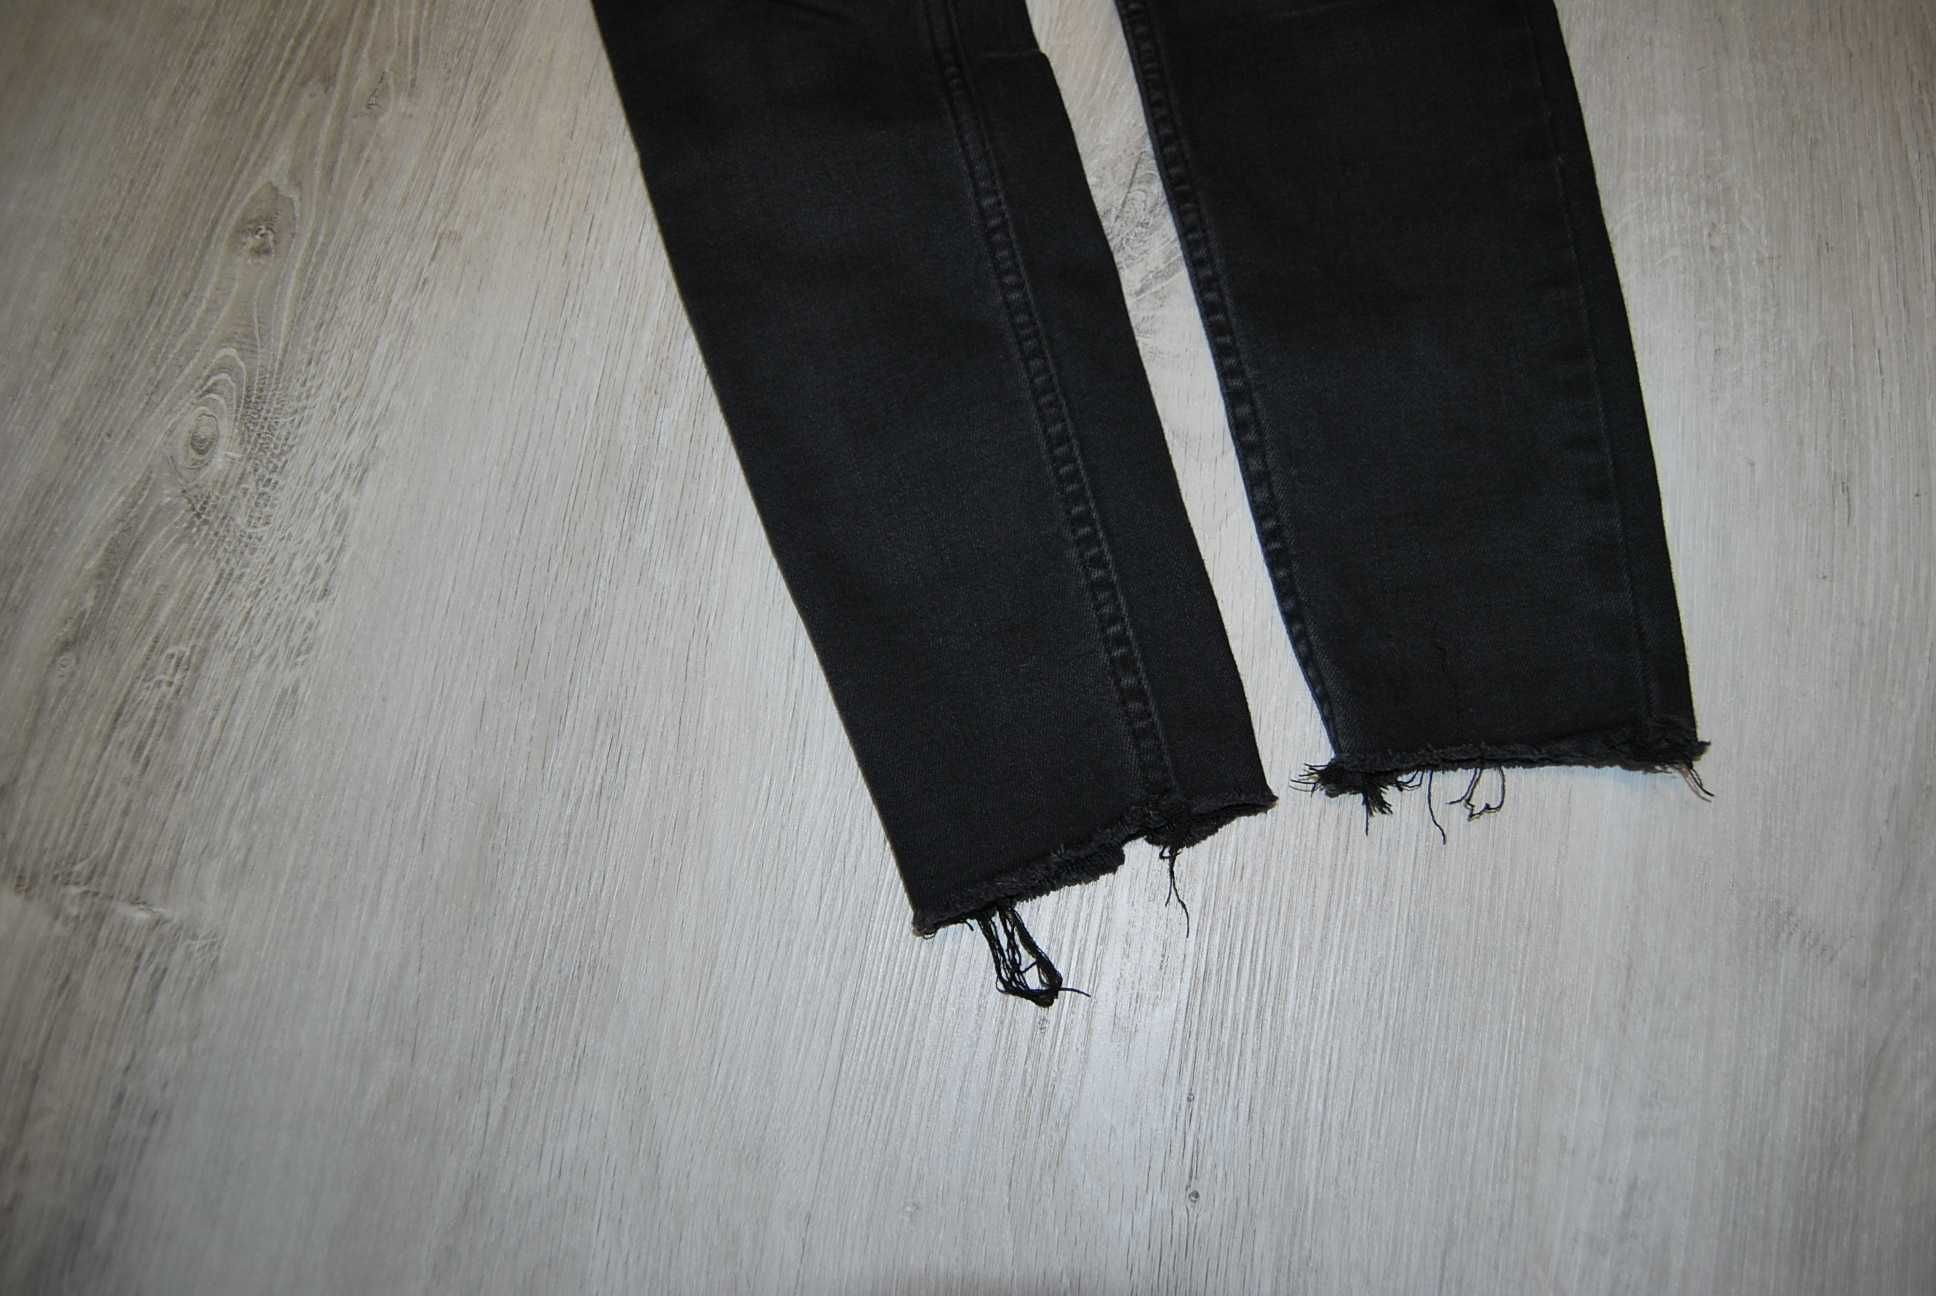 spodnie rurki jeans BERSHA rozm. xs,34